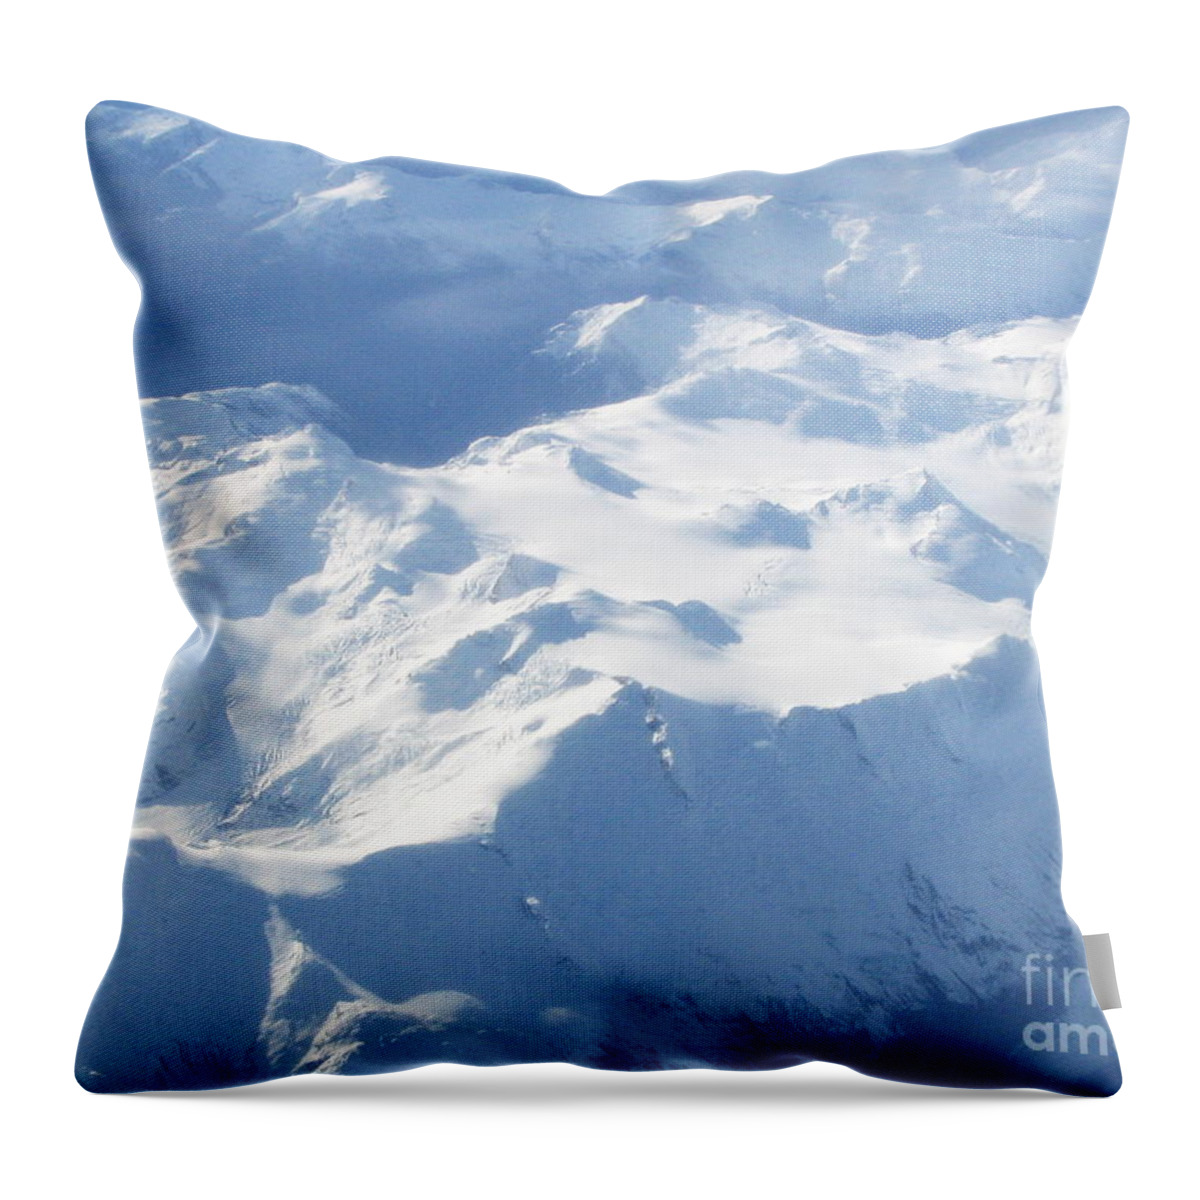 Snow Throw Pillow featuring the photograph Snow Daze by Vivian Martin